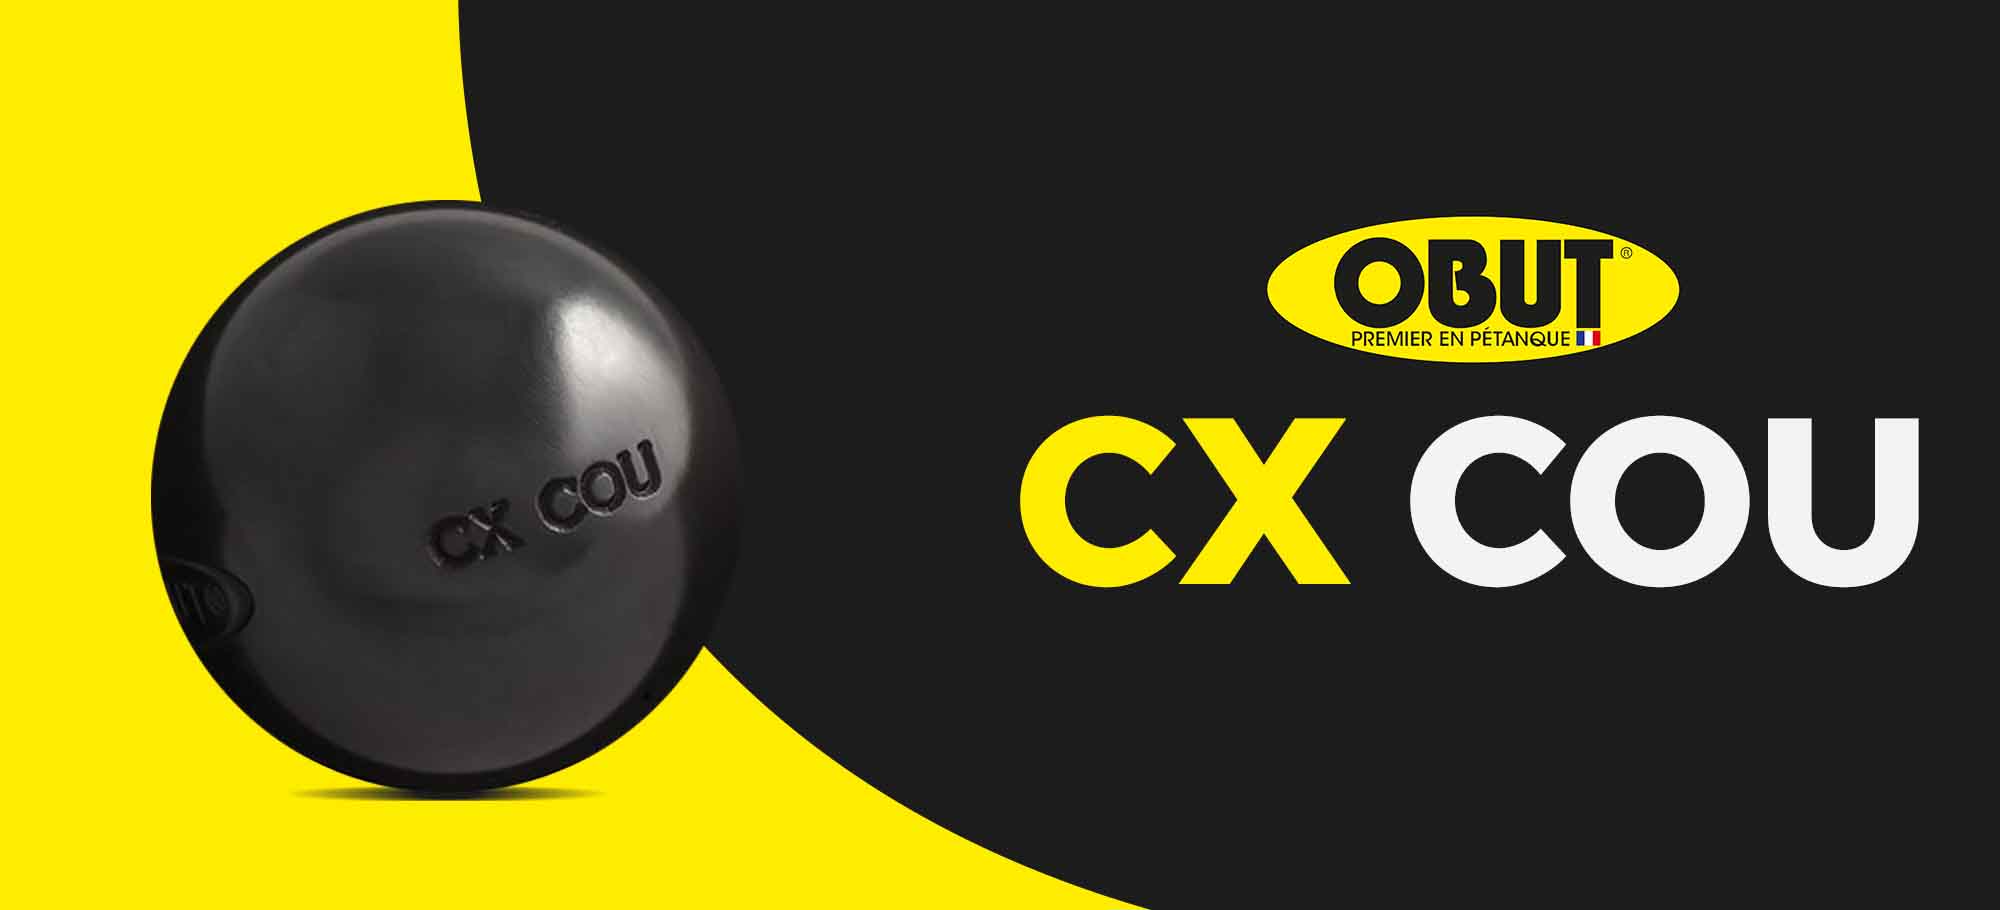 Lire la suite à propos de l’article Focus sur la CX COU d’Obut